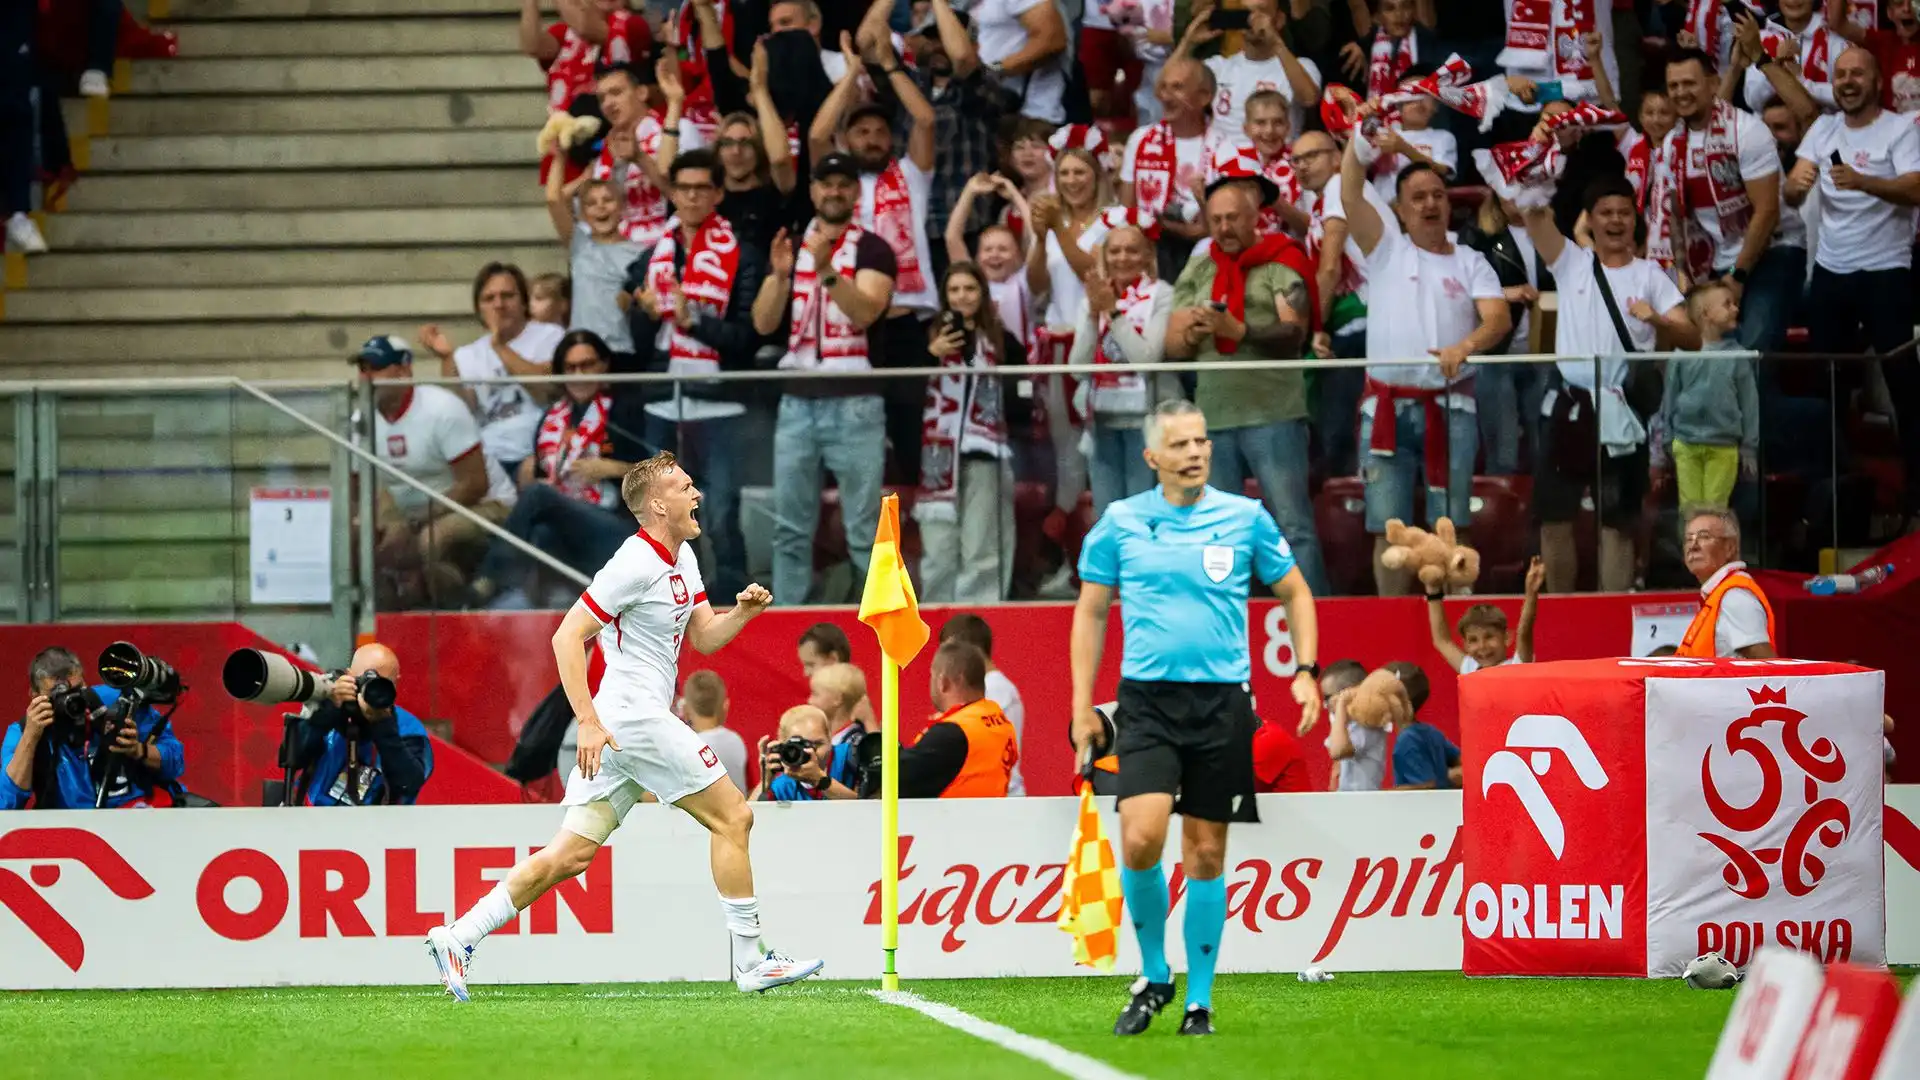 Dopo aver segnato la rete del vantaggio della Polonia, Swiderski è corso verso la bandierina ed ha saltato per celebrare il gol